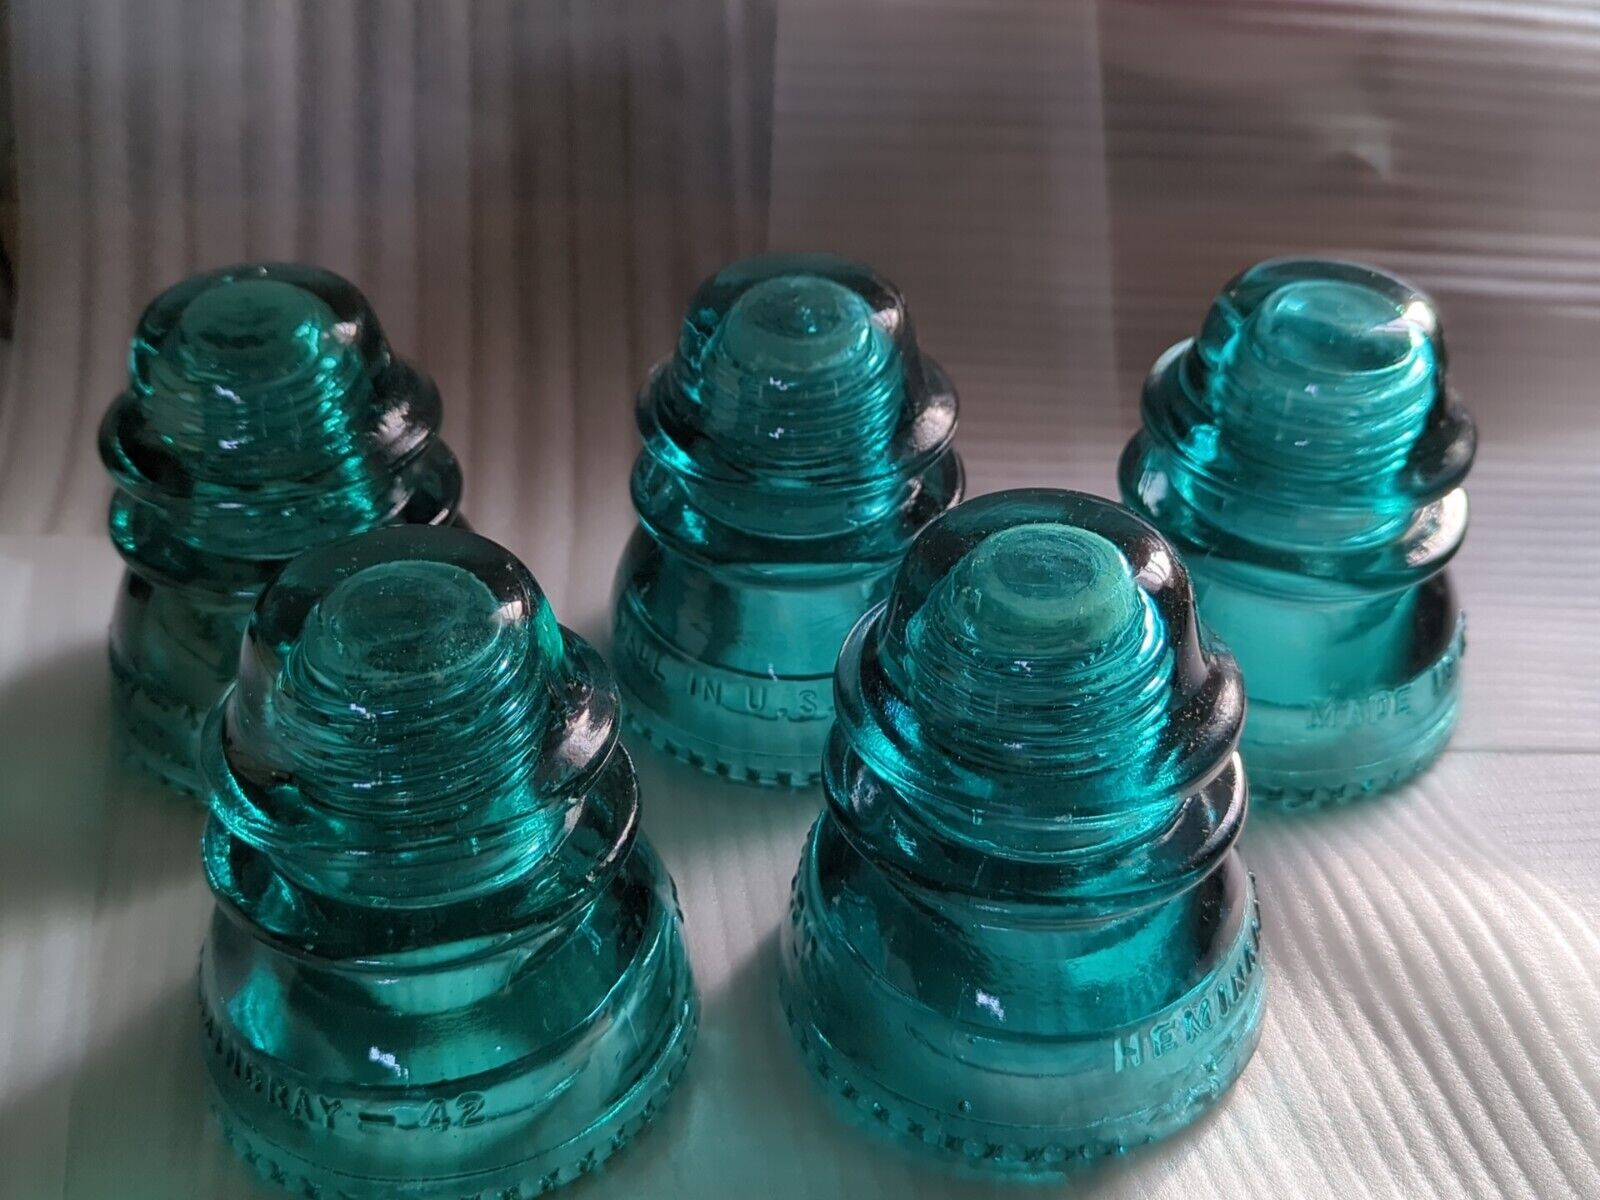  SPECIAL 5 Aqua (Blue/Green)  Hemingray #42 Electrical Glass Insulators